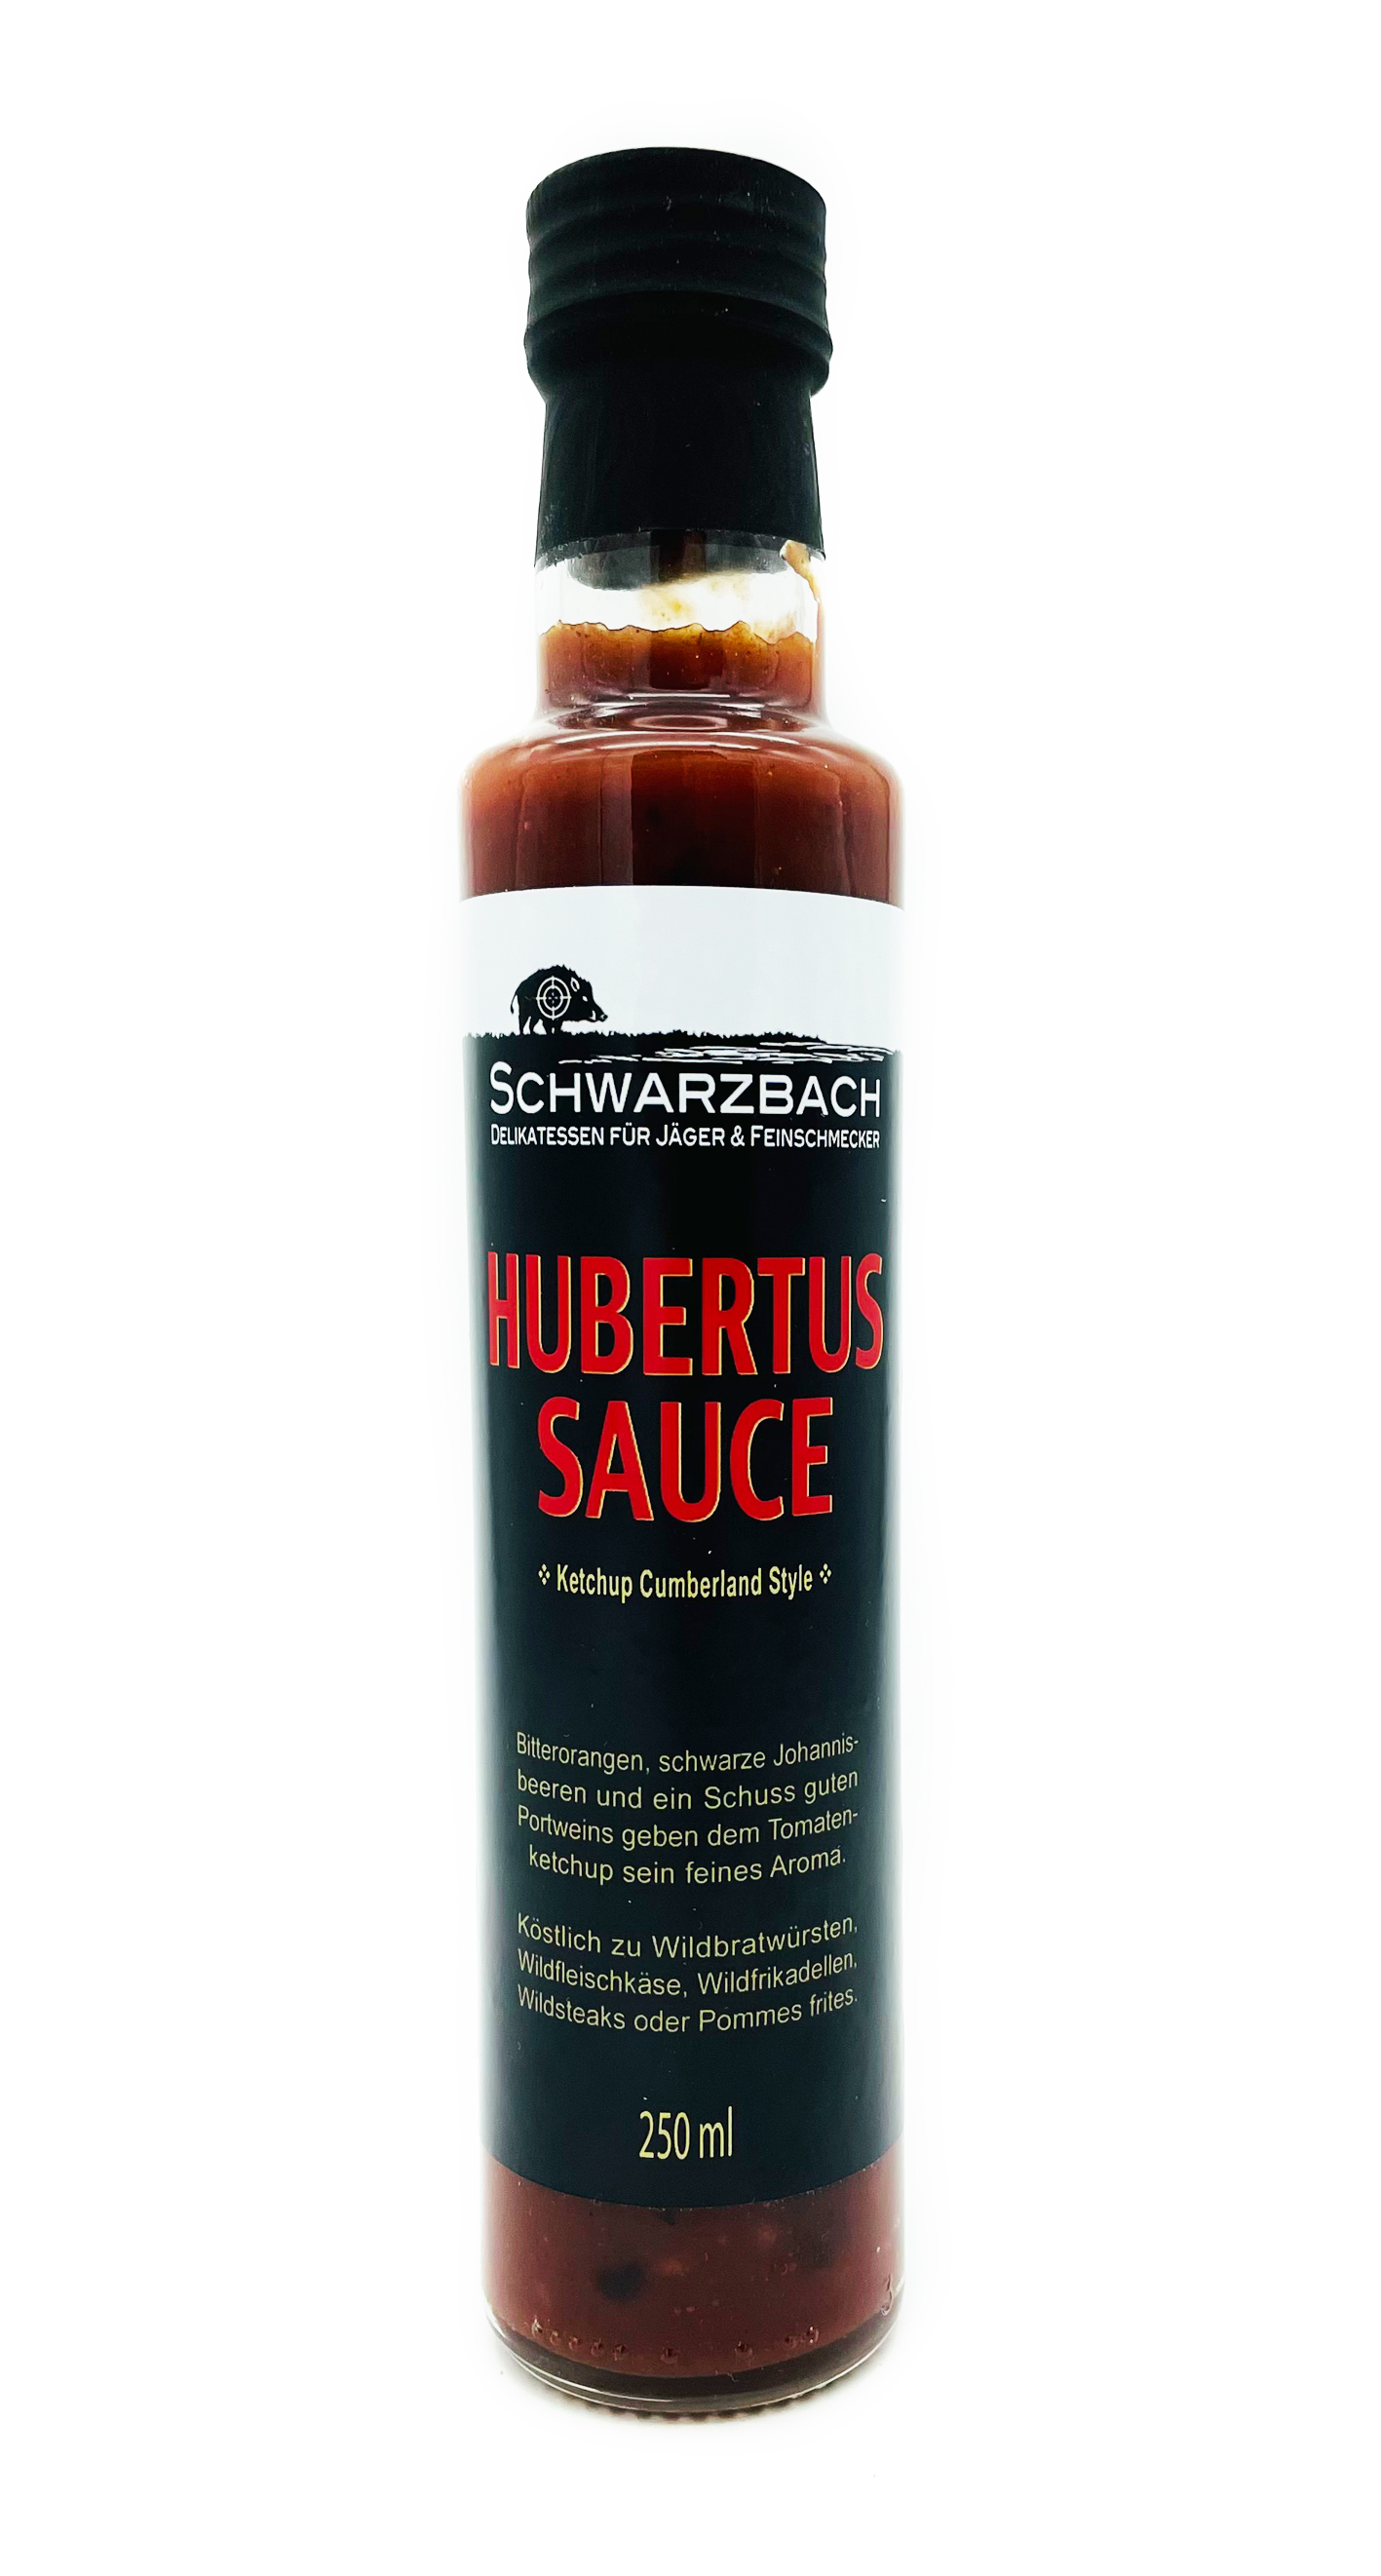 Hubertus Sauce